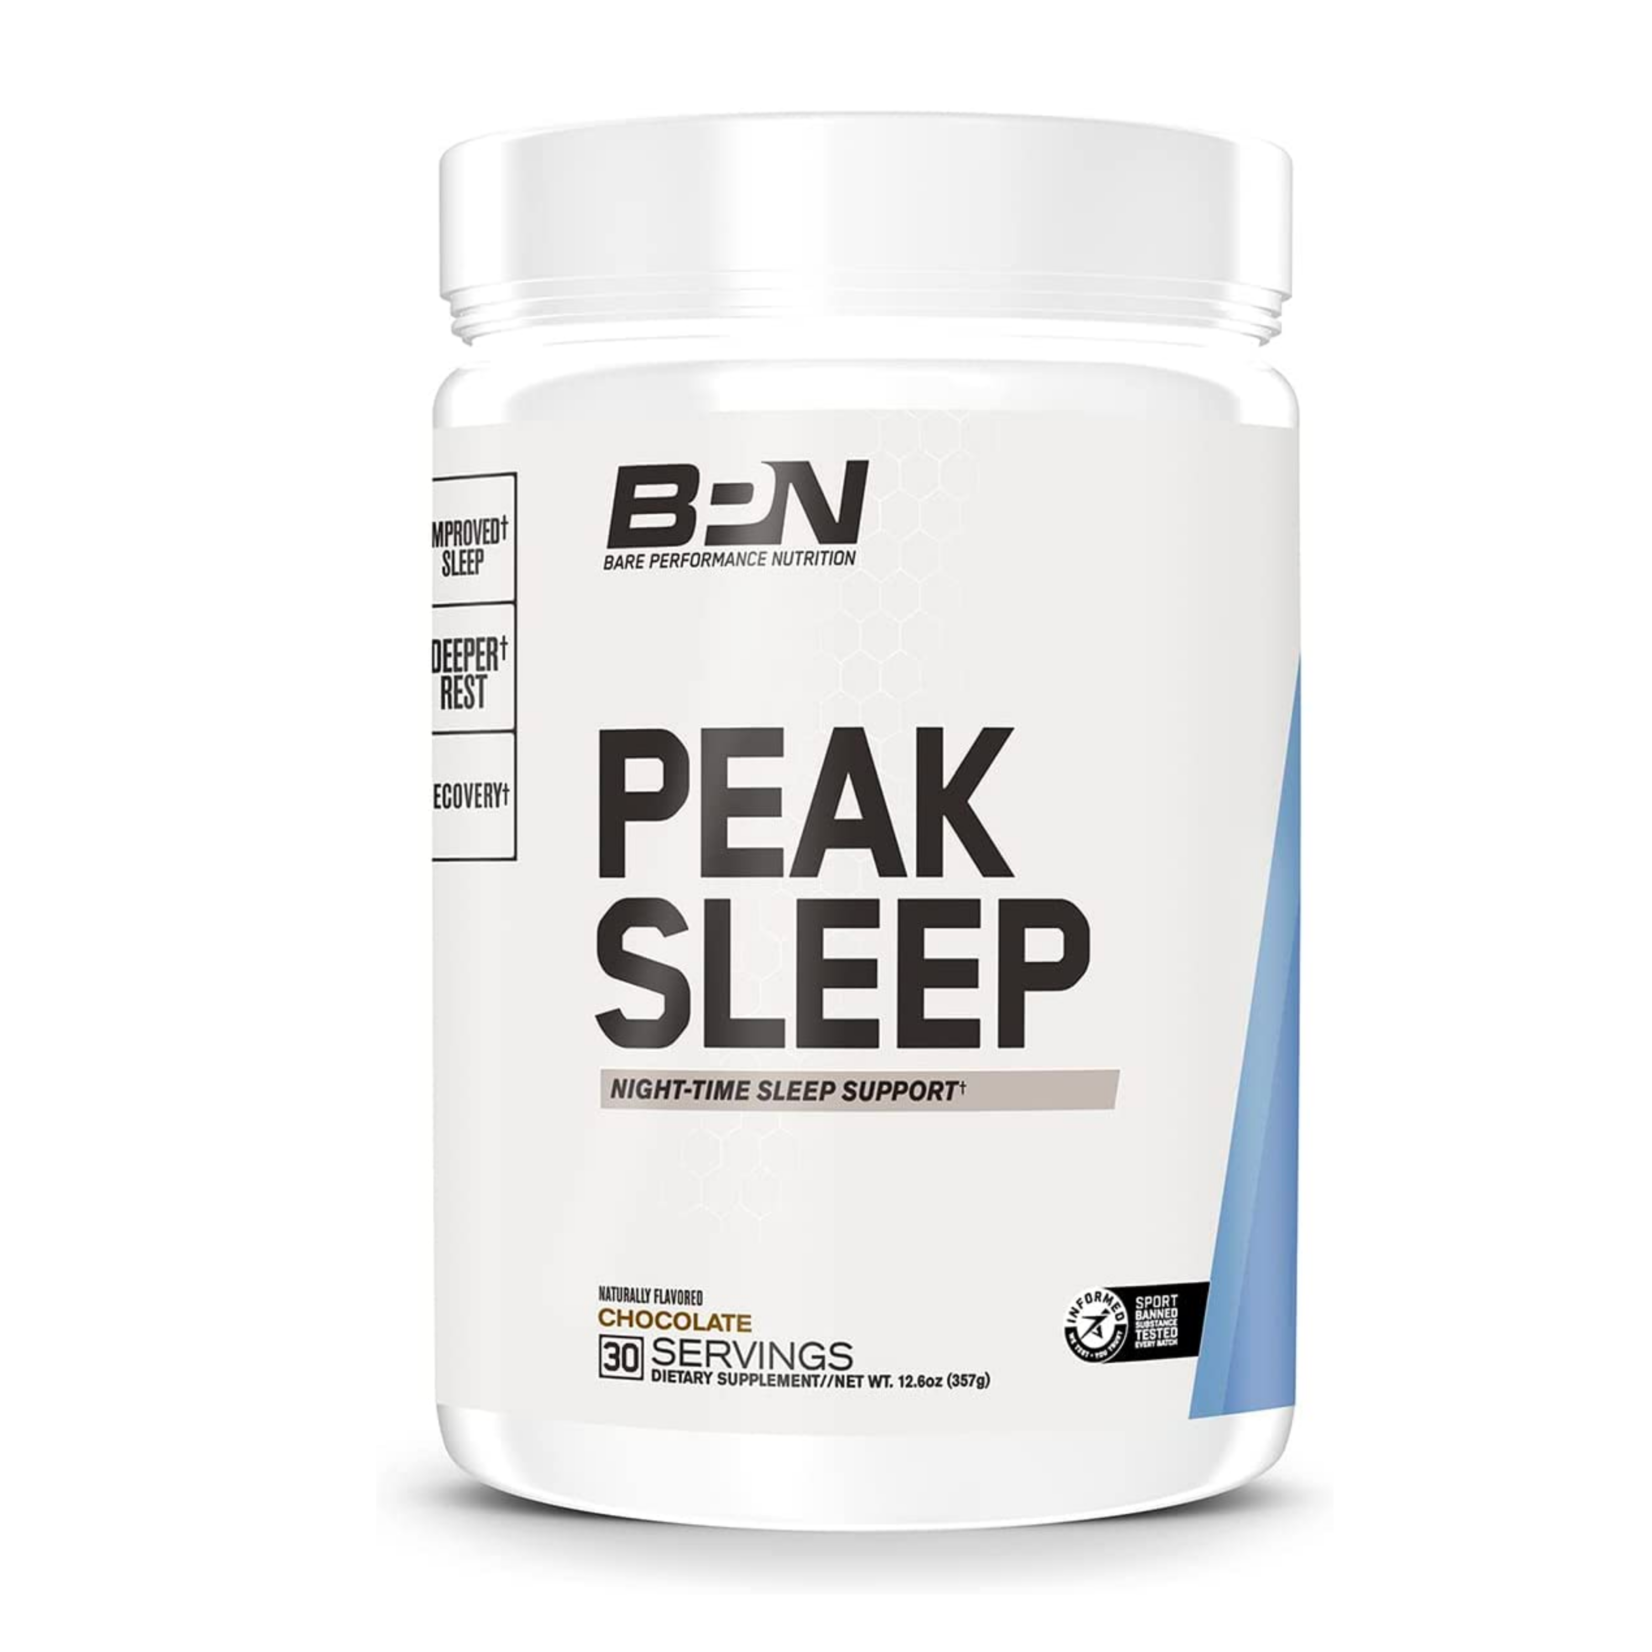 Bare Performance Nutrition BPN Peak Sleep